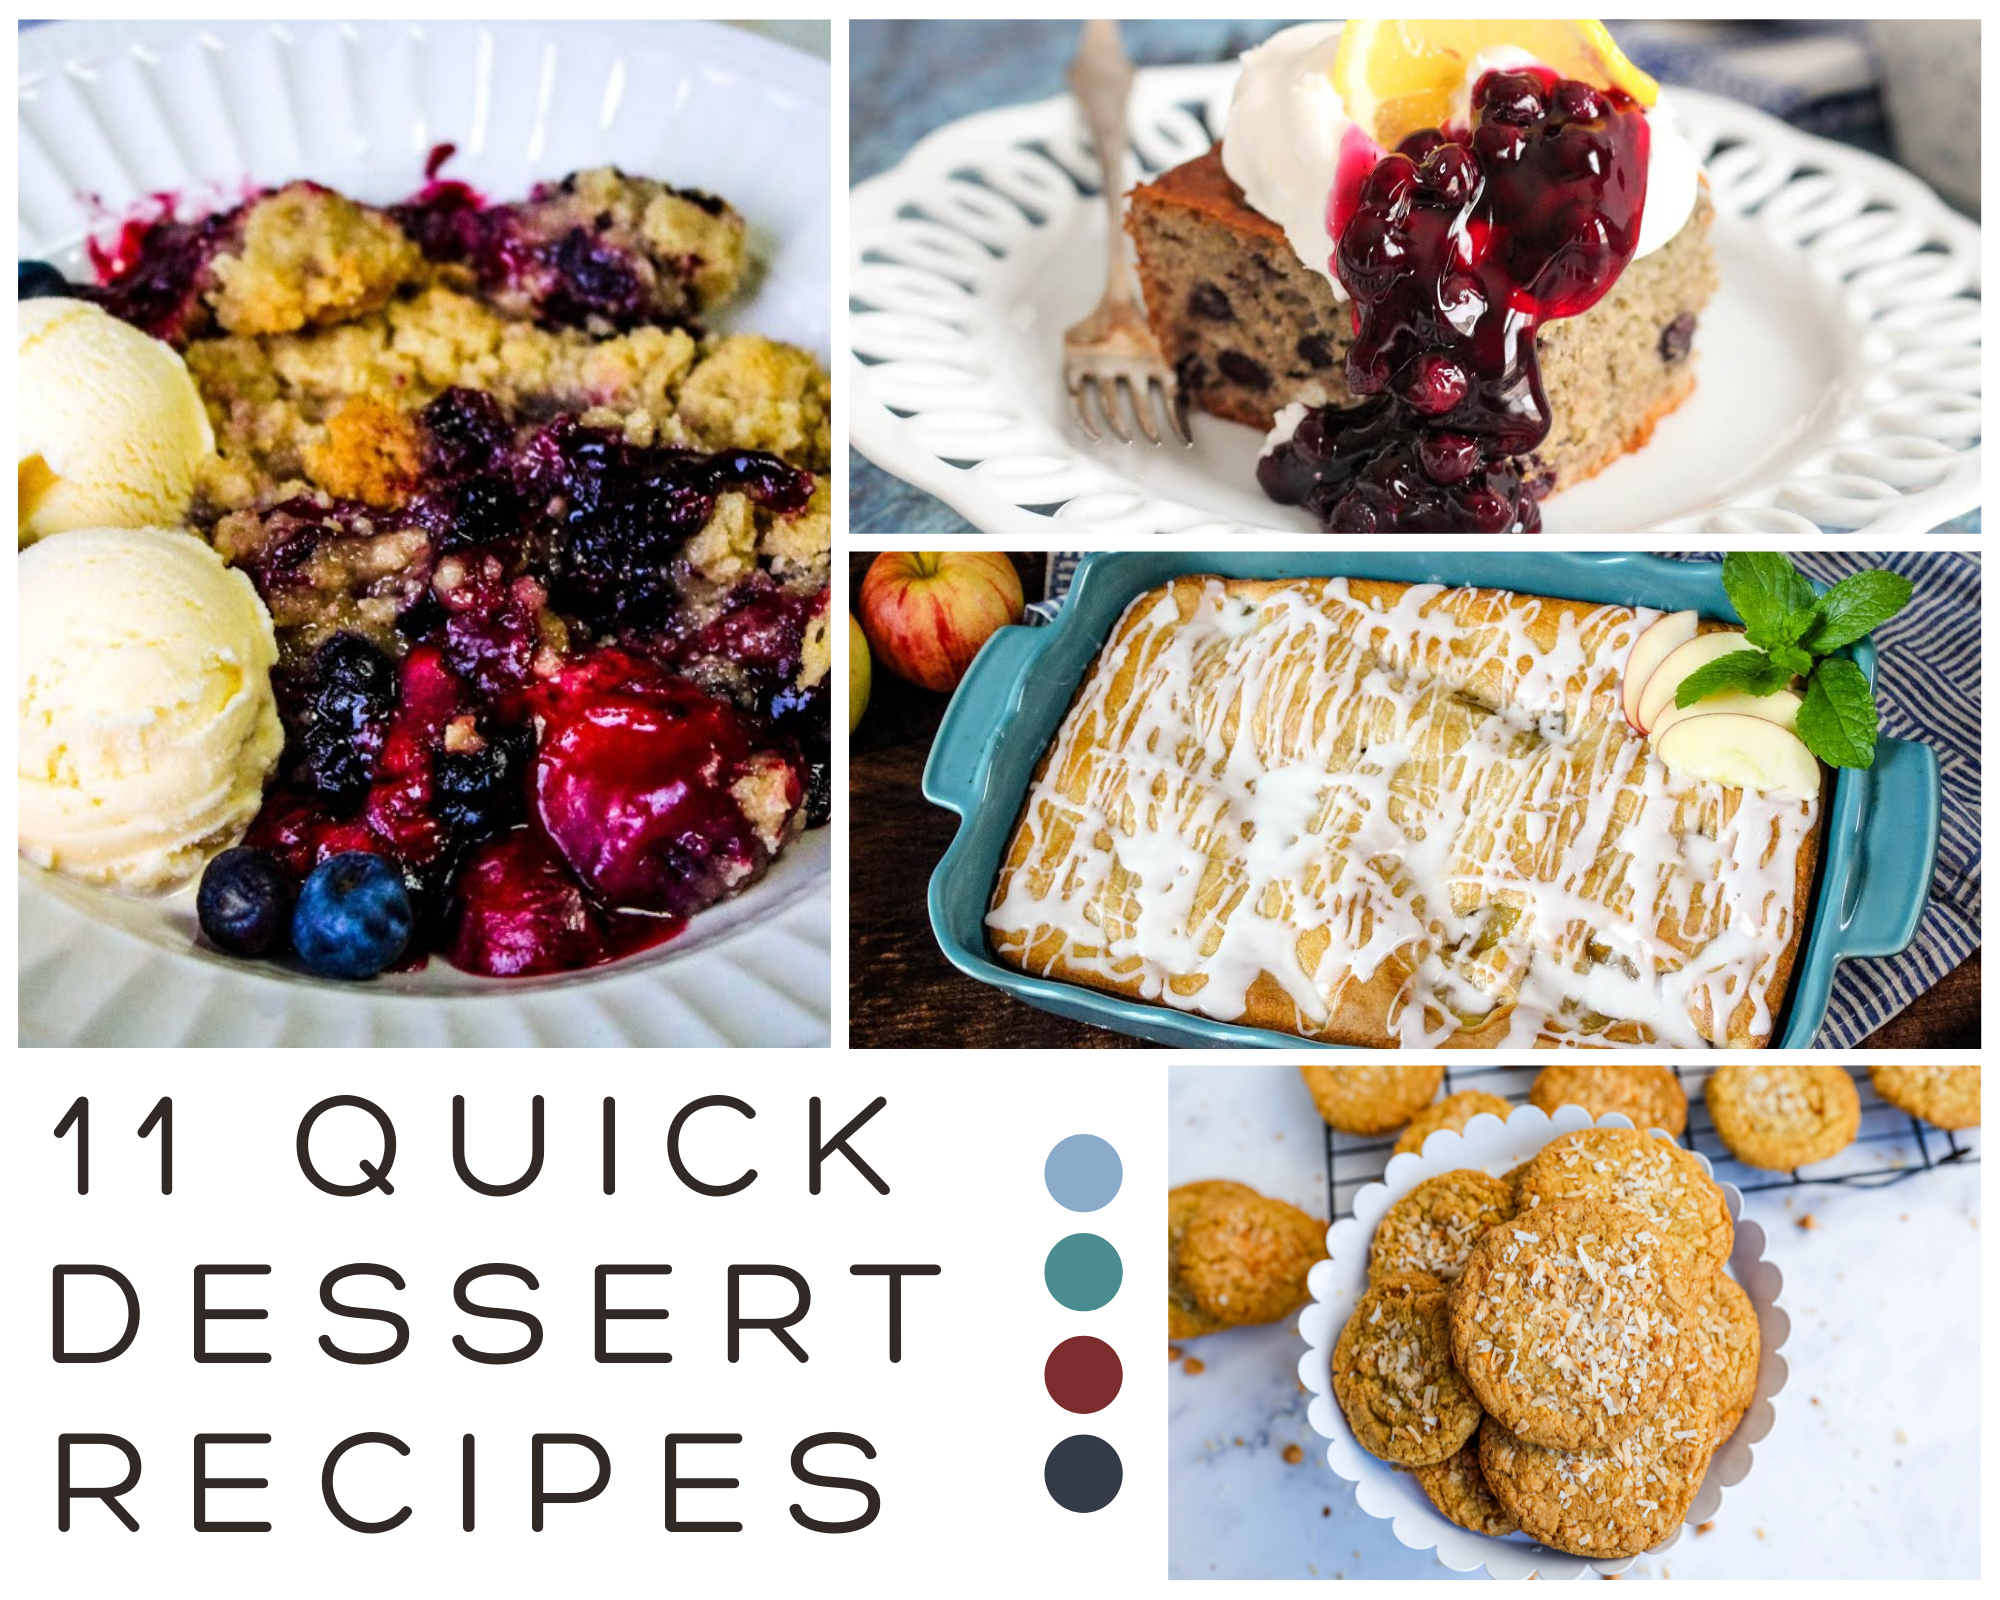 Quick Dessert Recipes